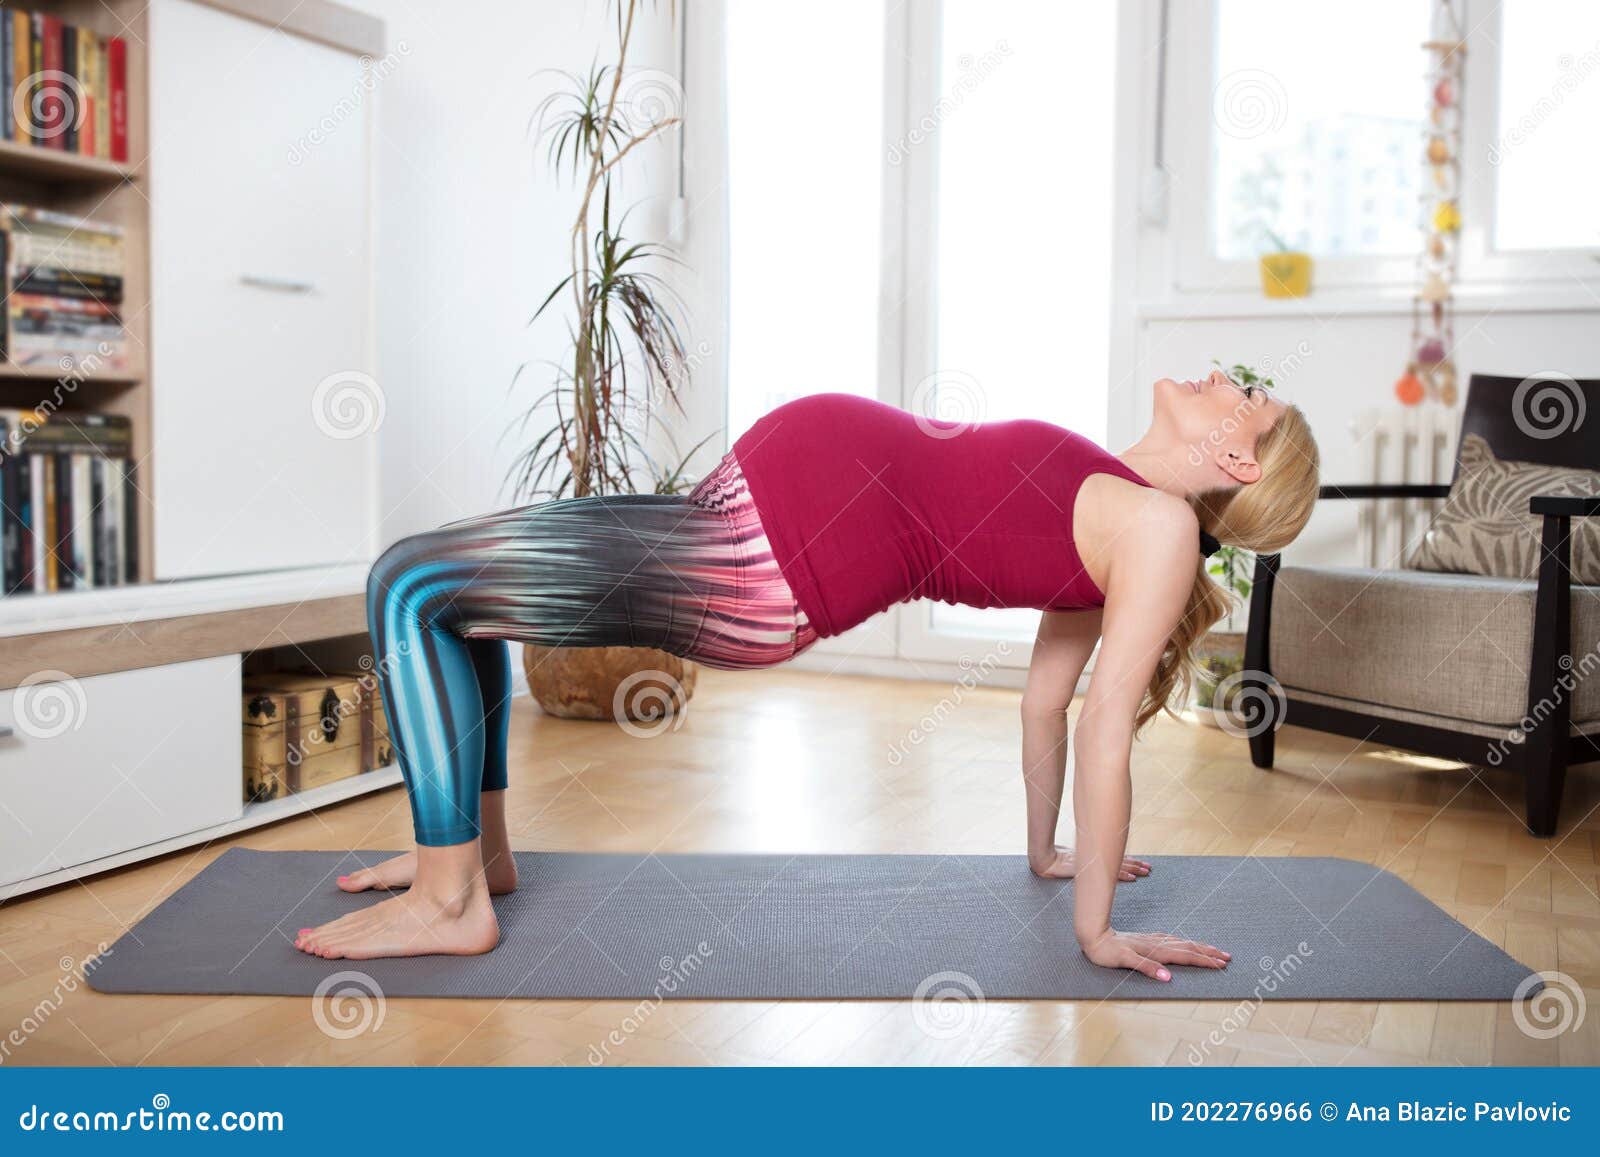 孕妇瑜伽图片大全-孕妇瑜伽高清图片下载-觅知网